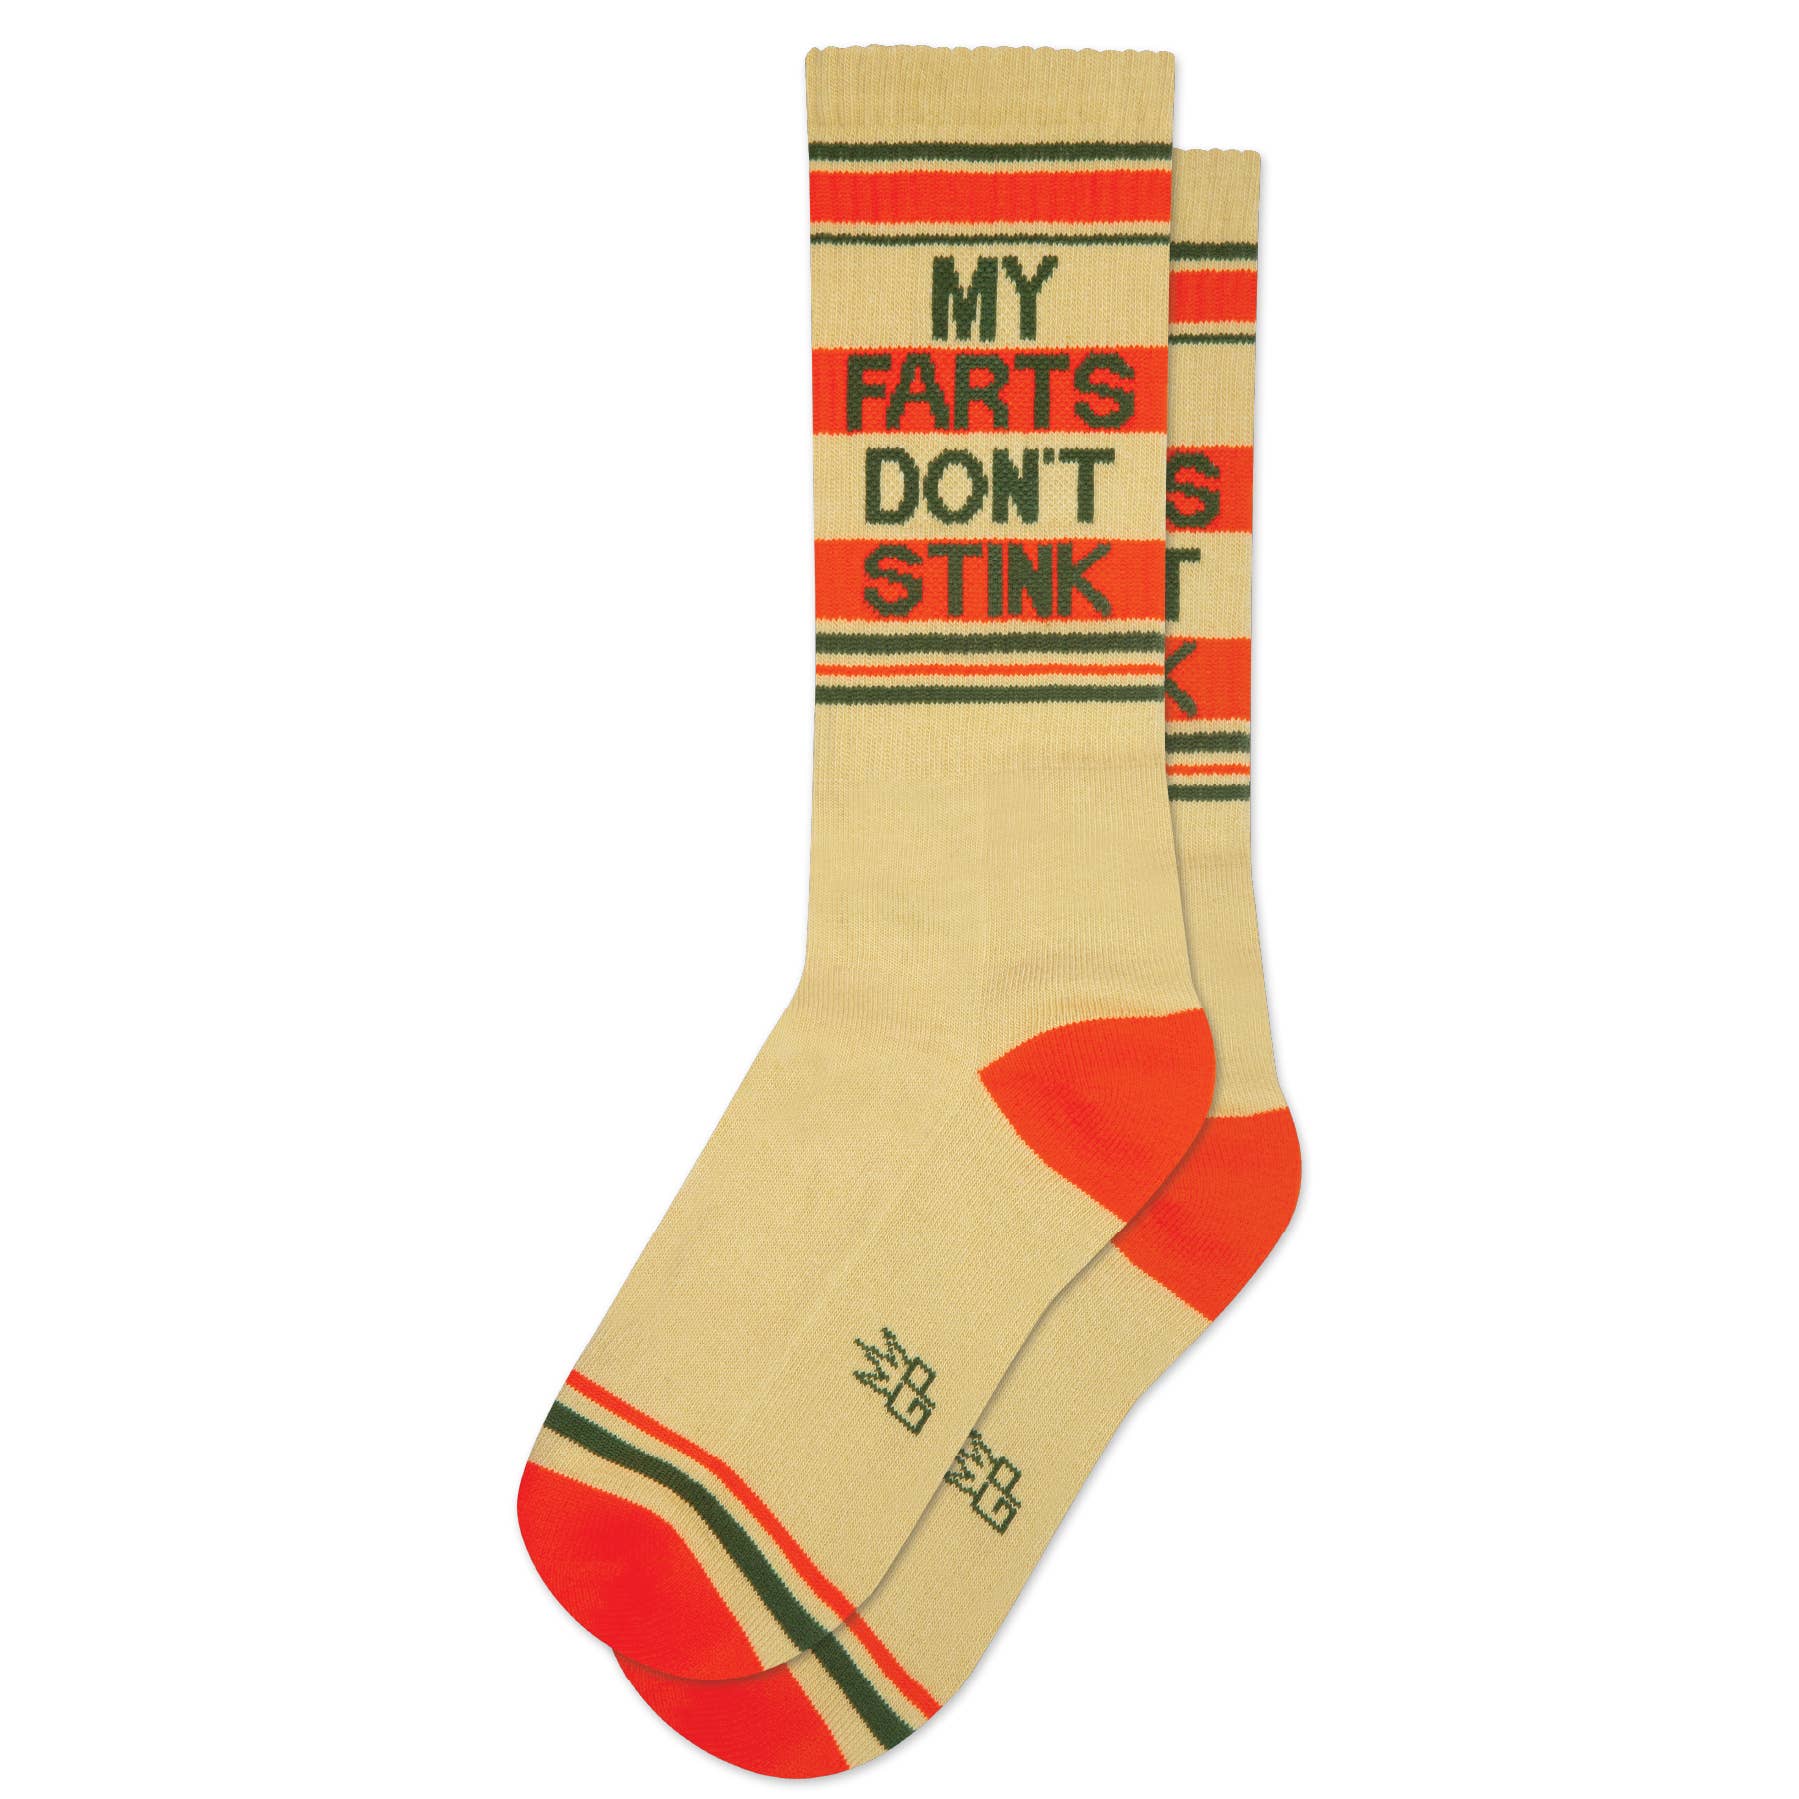 Knitido Essential Midi Crew Cut Toe Socks